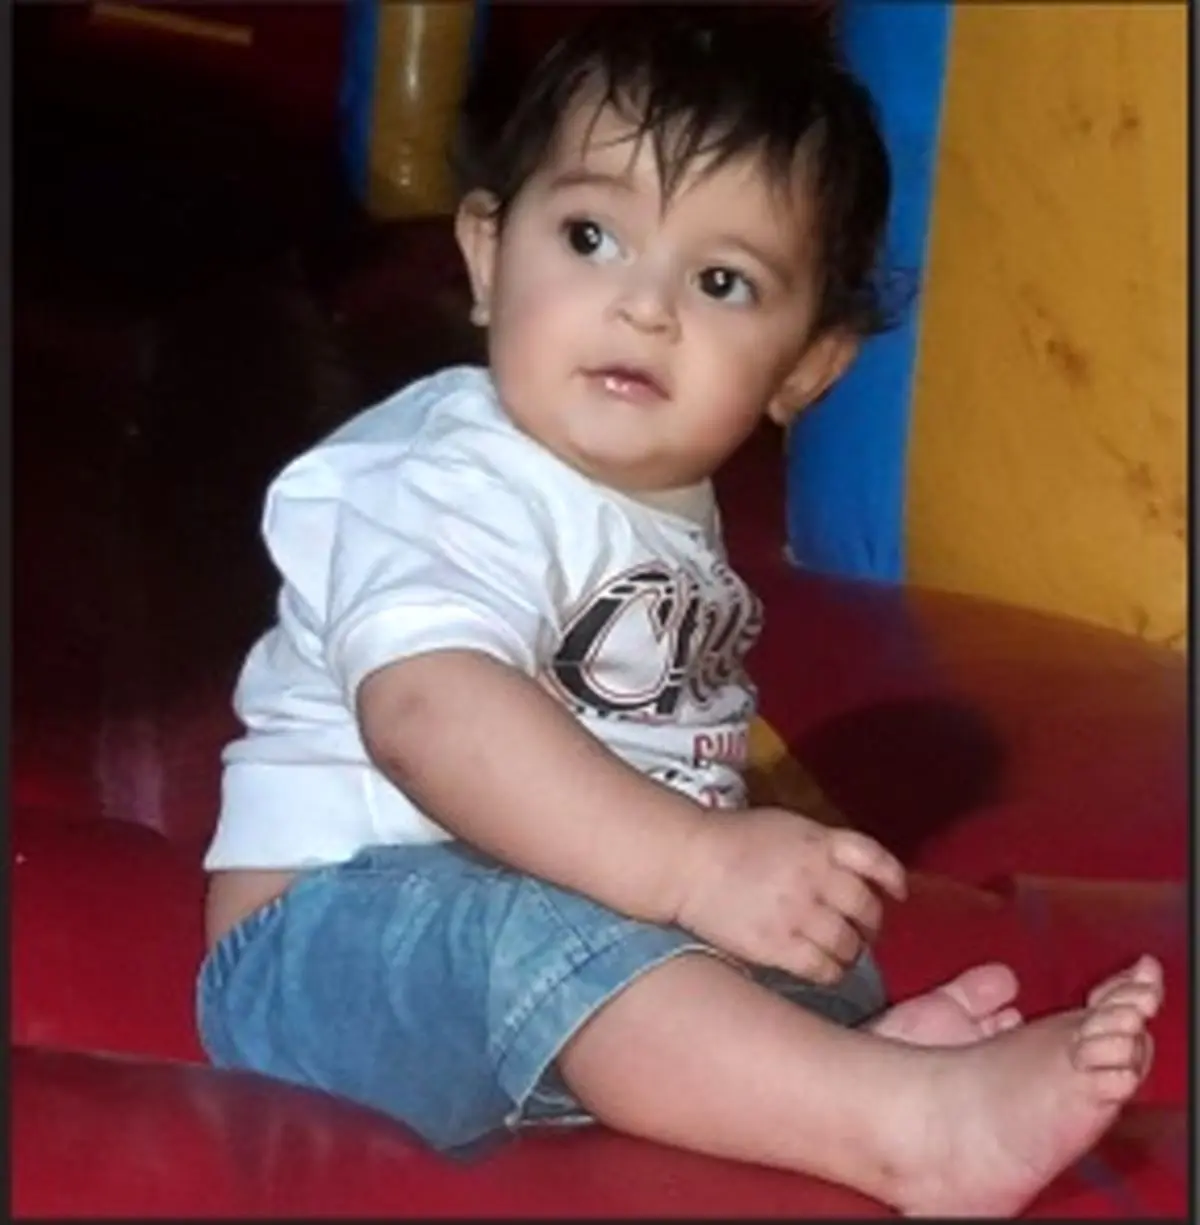 مرگ تلخ کودک 2 ساله در جوی فاضلاب